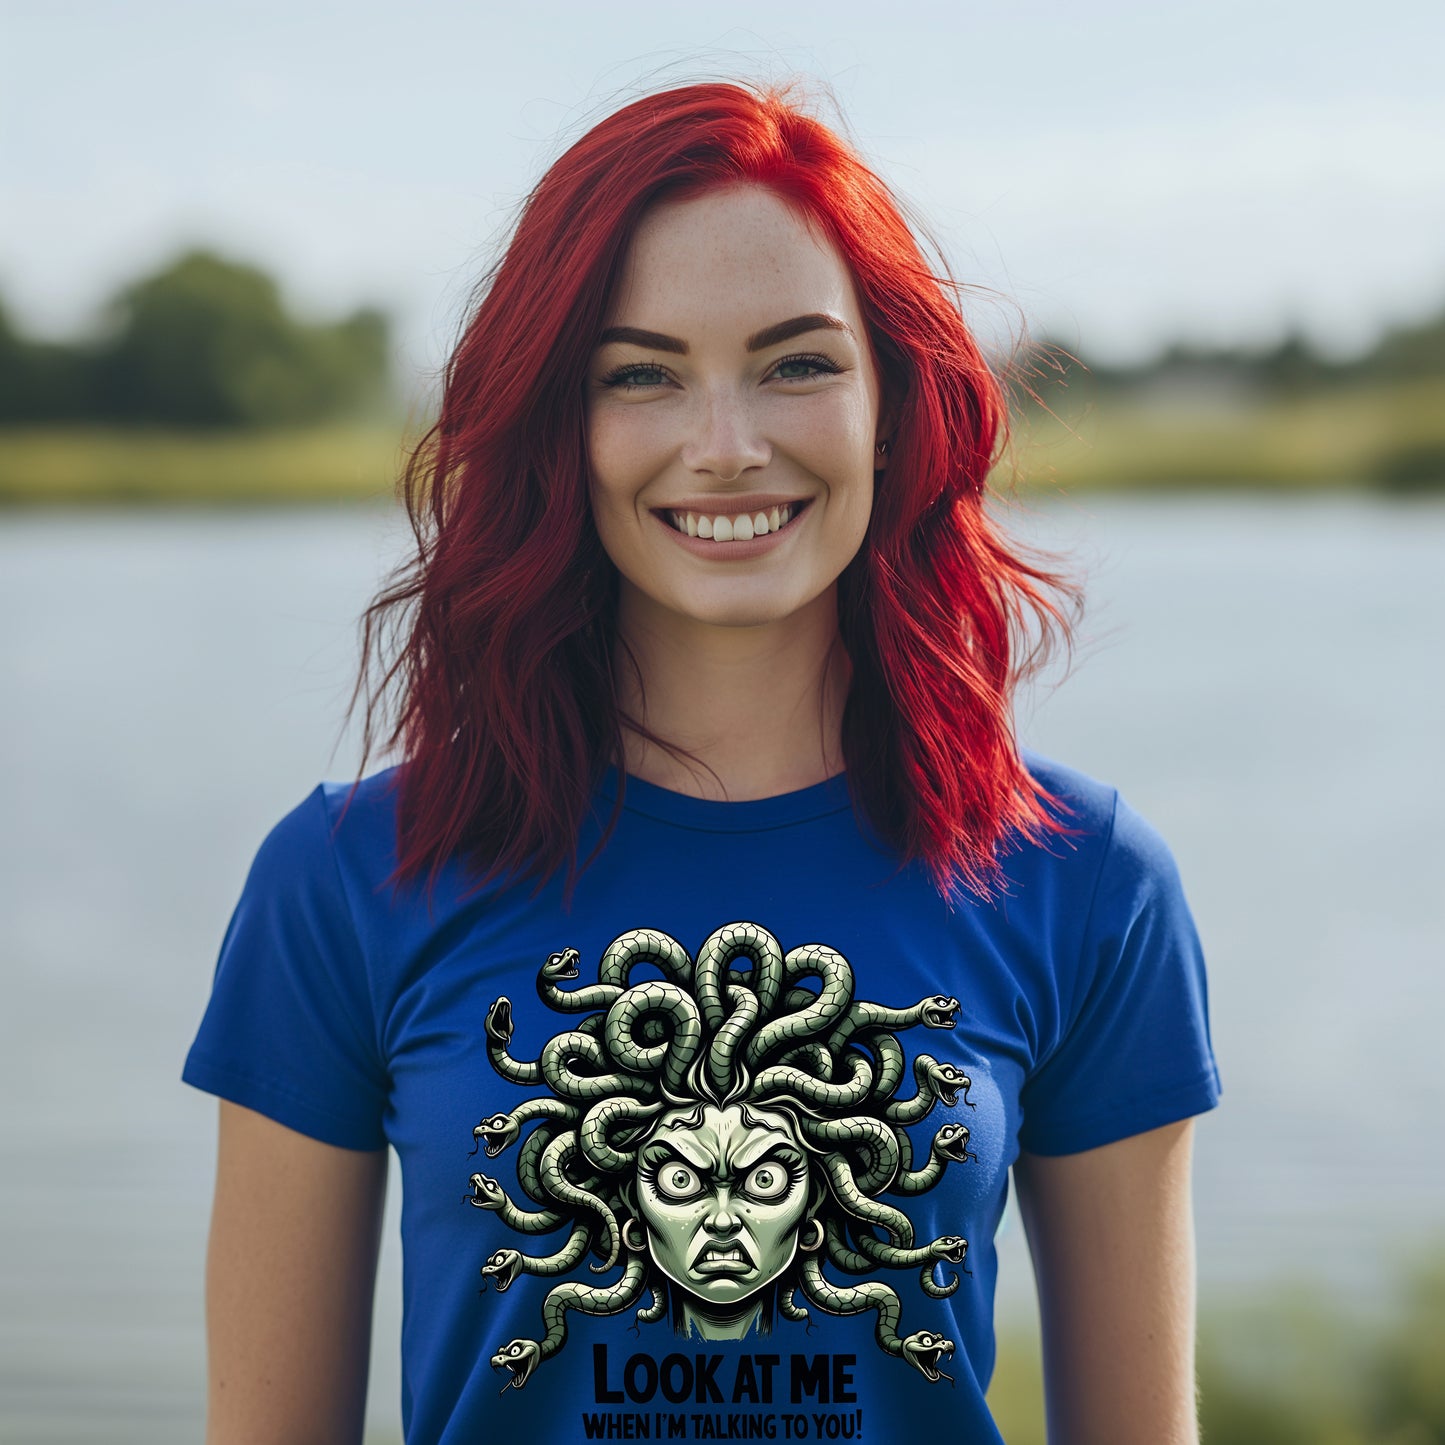 Funny Medusa T-Shirt - Funny Medusa Tee, Medusa T-Shirt, Medusa T-Shirt Gift, Medusa Tee Gift, Medusa Mythology T-Shirt, Medusa Myth T-Shirt